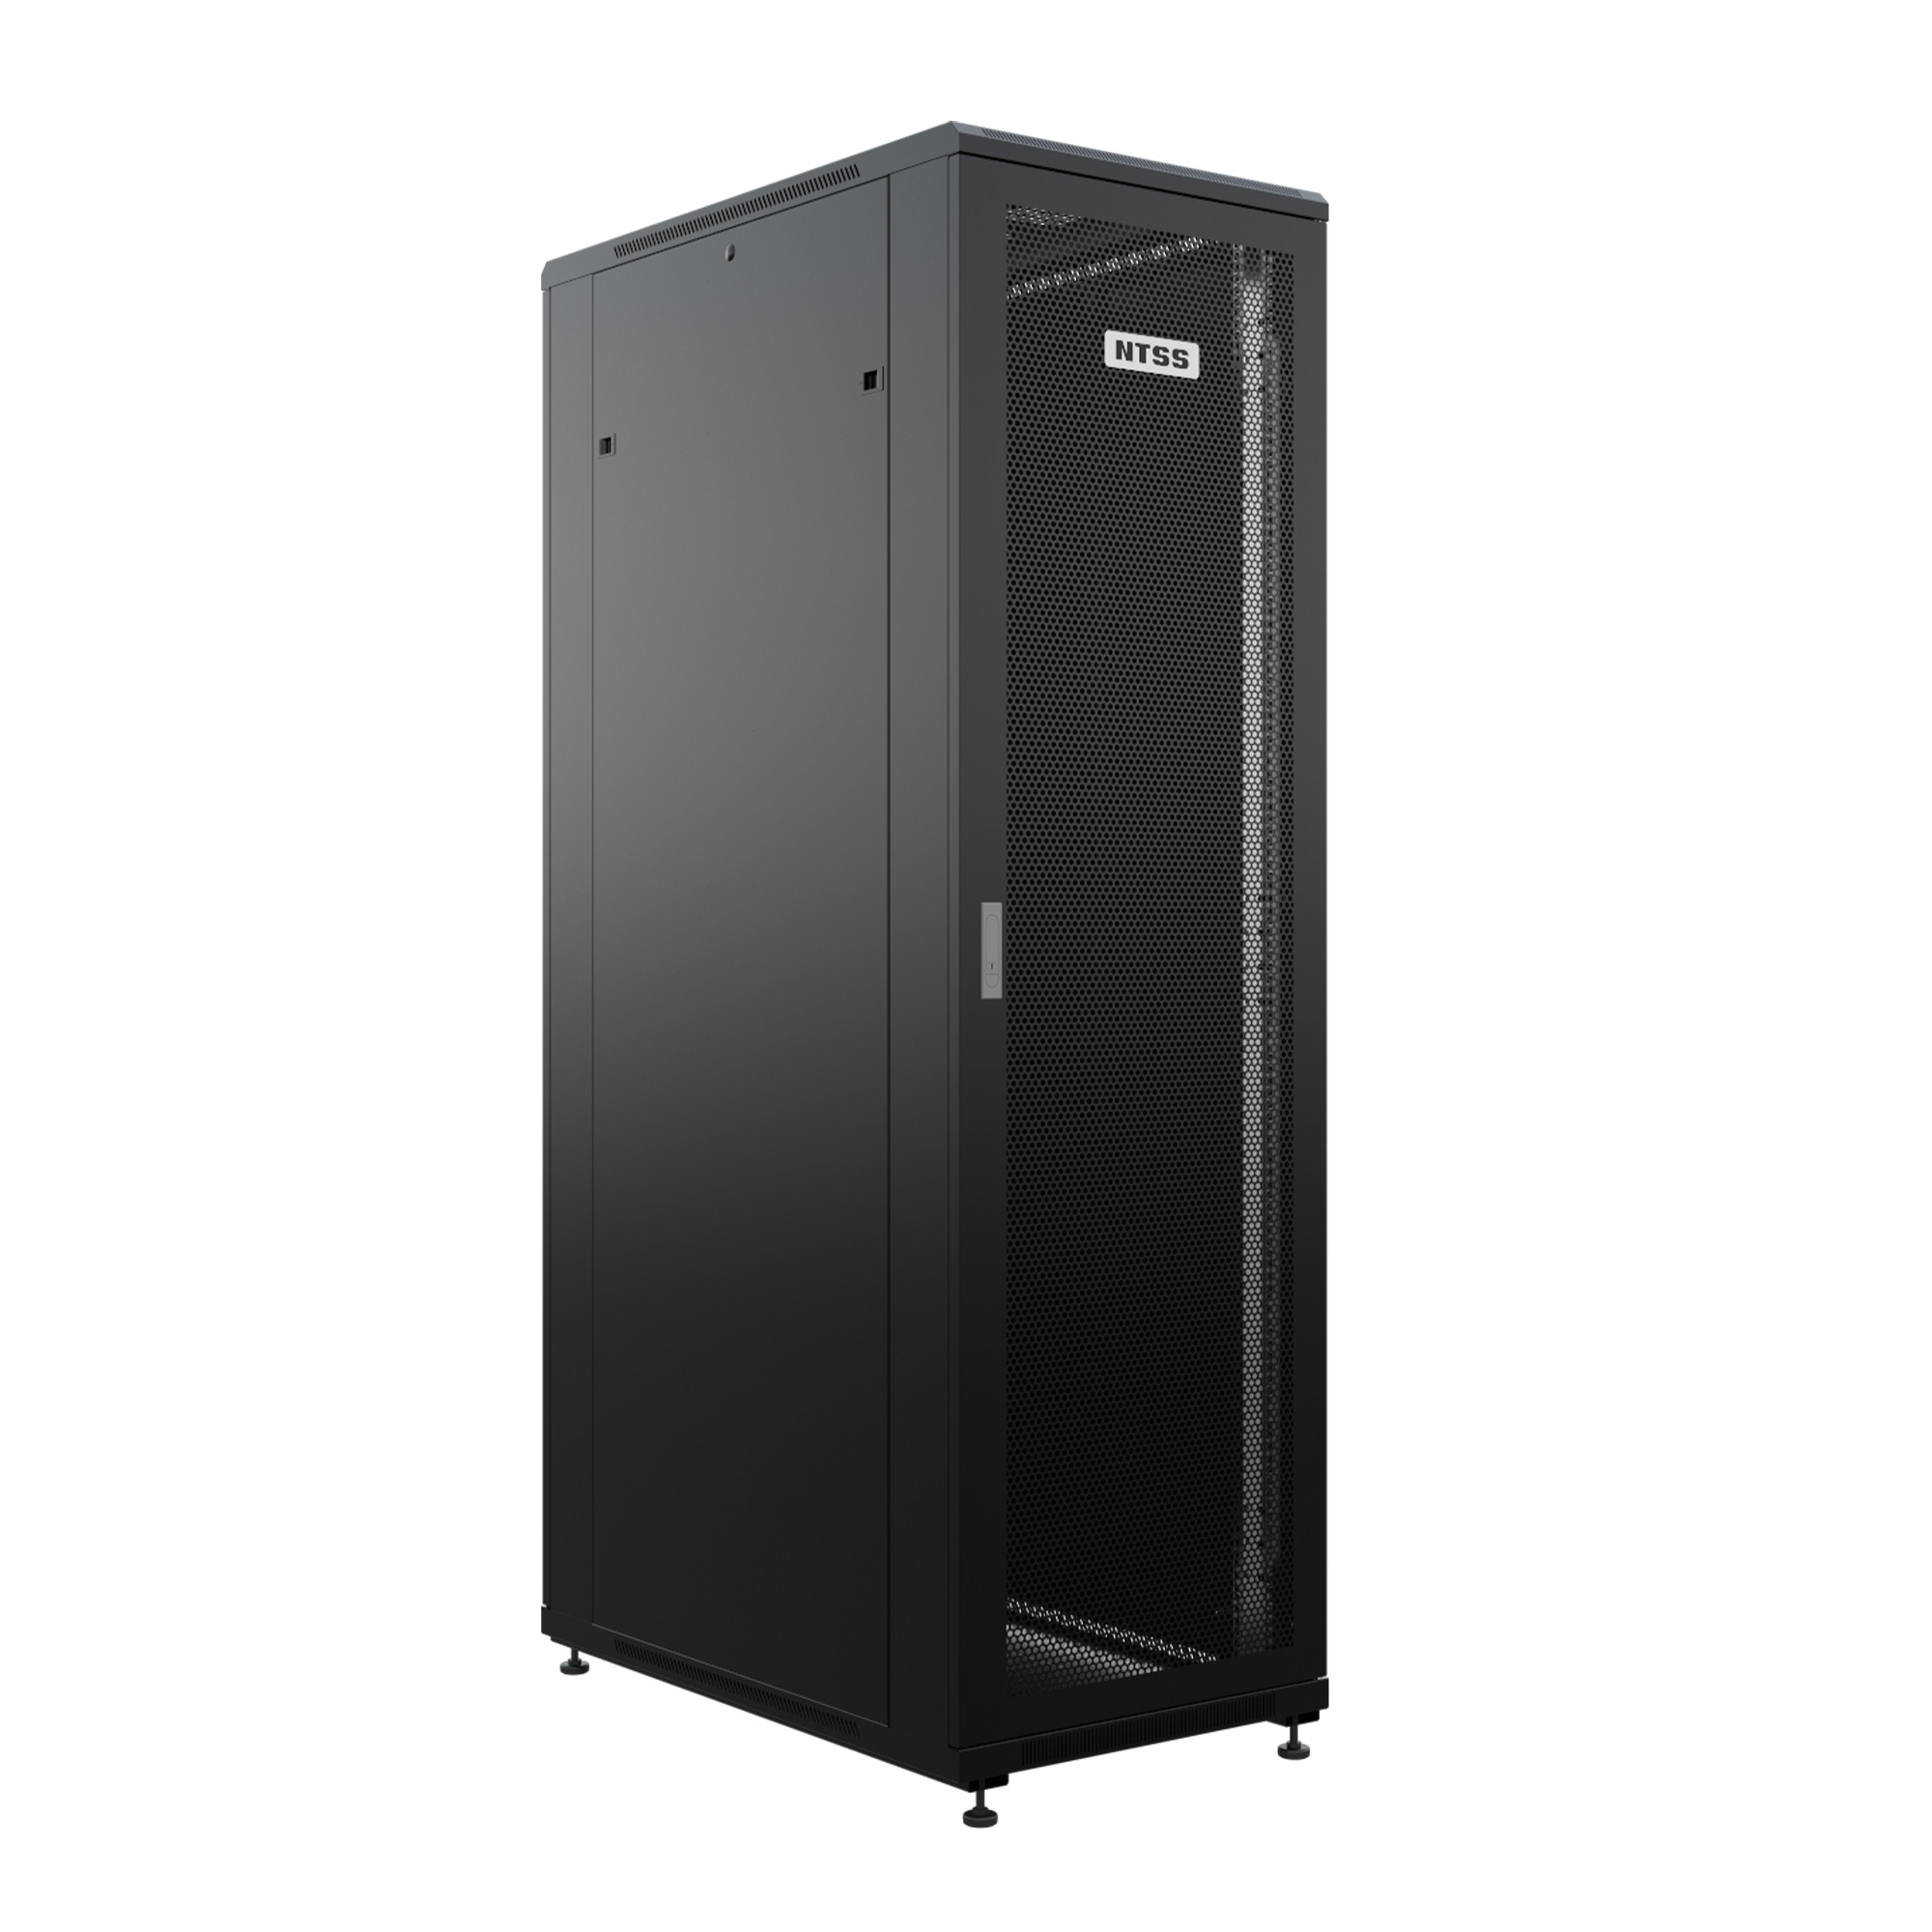 Шкаф напольный универсальный серверный NTSS R 22U 600х1000мм, 4 профиля 19, двери перфорированная и перфорированная, боковые стенки съемные, регулируемые опоры, разобранный, черный RAL 9005